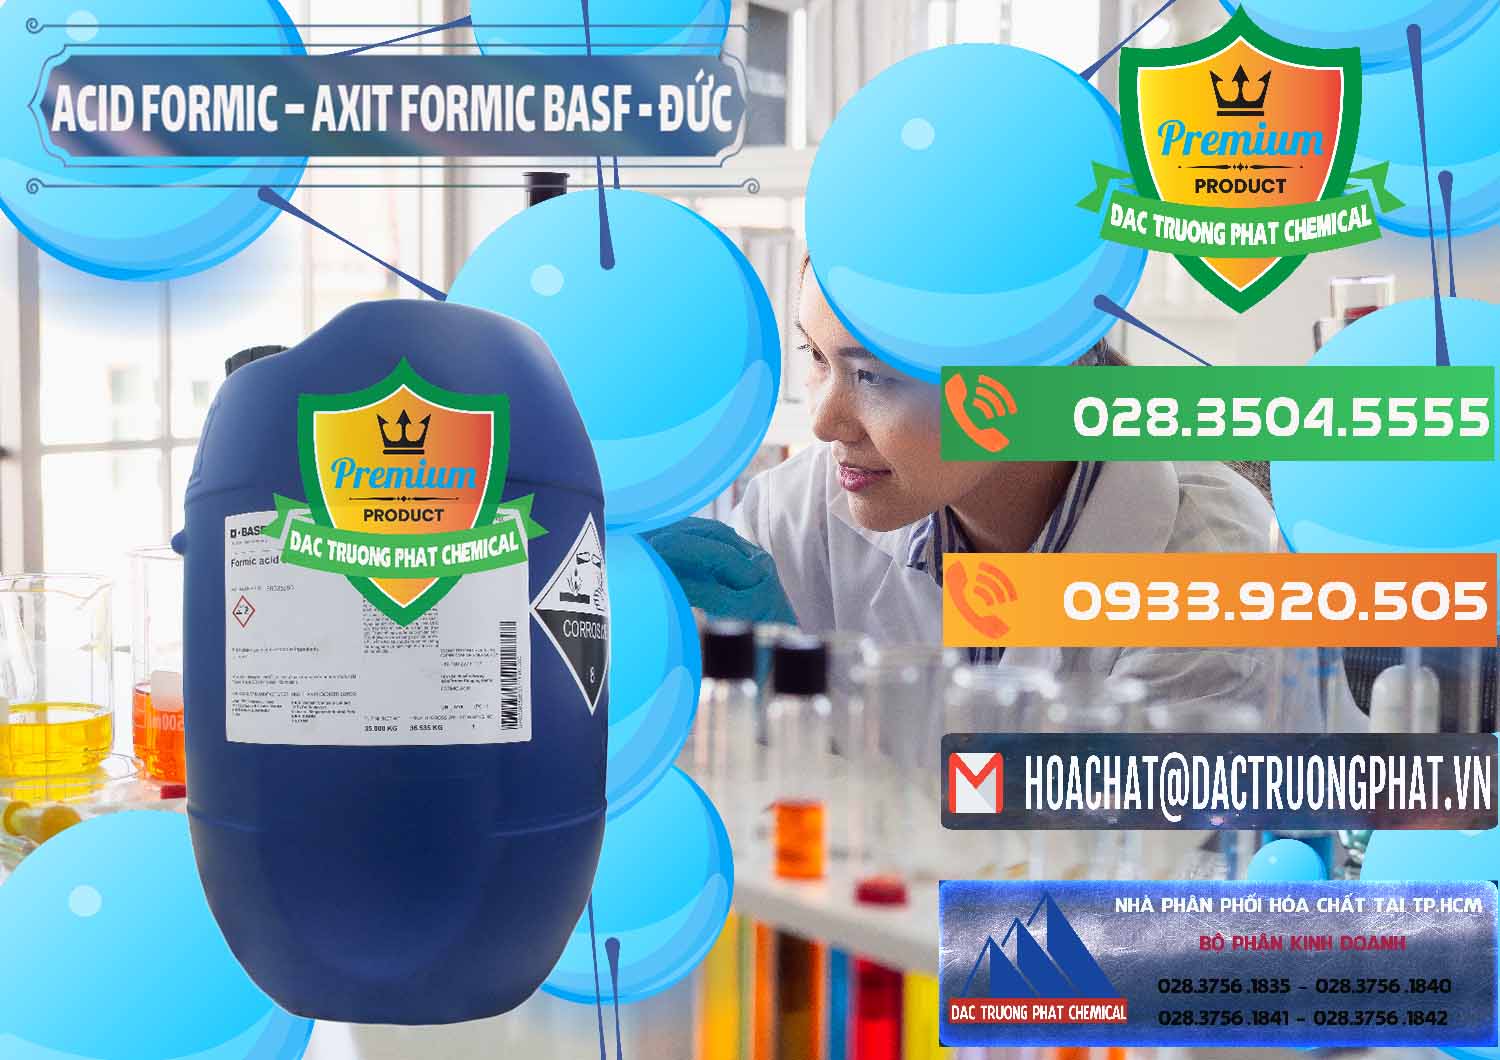 Công ty bán _ phân phối Acid Formic - Axit Formic BASF Đức Germany - 0028 - Chuyên cung cấp & phân phối hóa chất tại TP.HCM - hoachatxulynuoc.com.vn